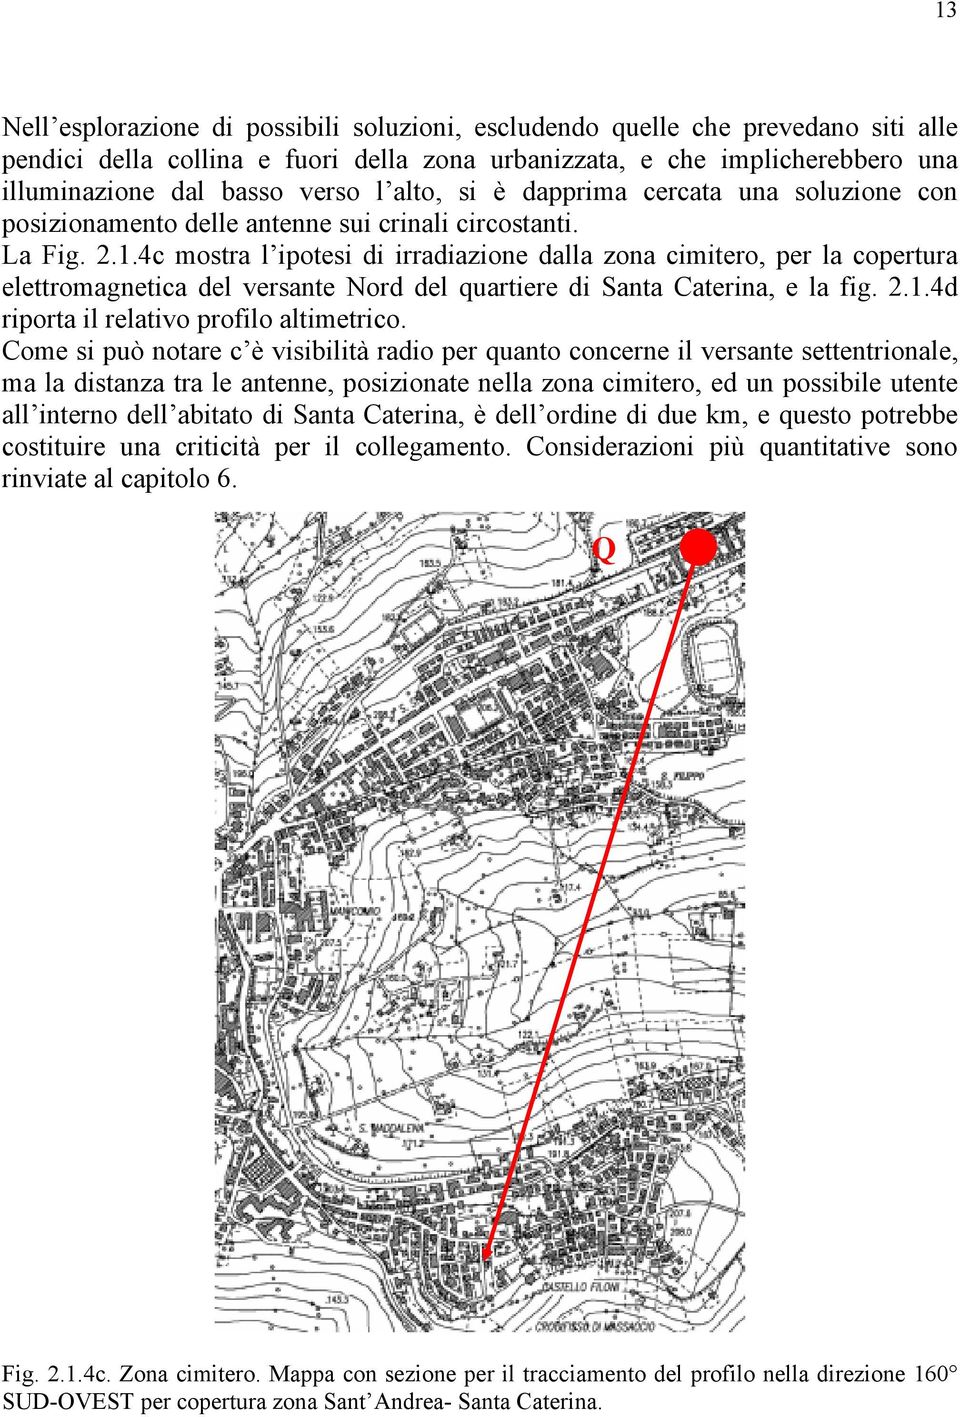 4c mostra l ipotesi di irradiazione dalla zona cimitero, per la copertura elettromagnetica del versante Nord del quartiere di Santa Caterina, e la fig. 2.1.4d riporta il relativo profilo altimetrico.